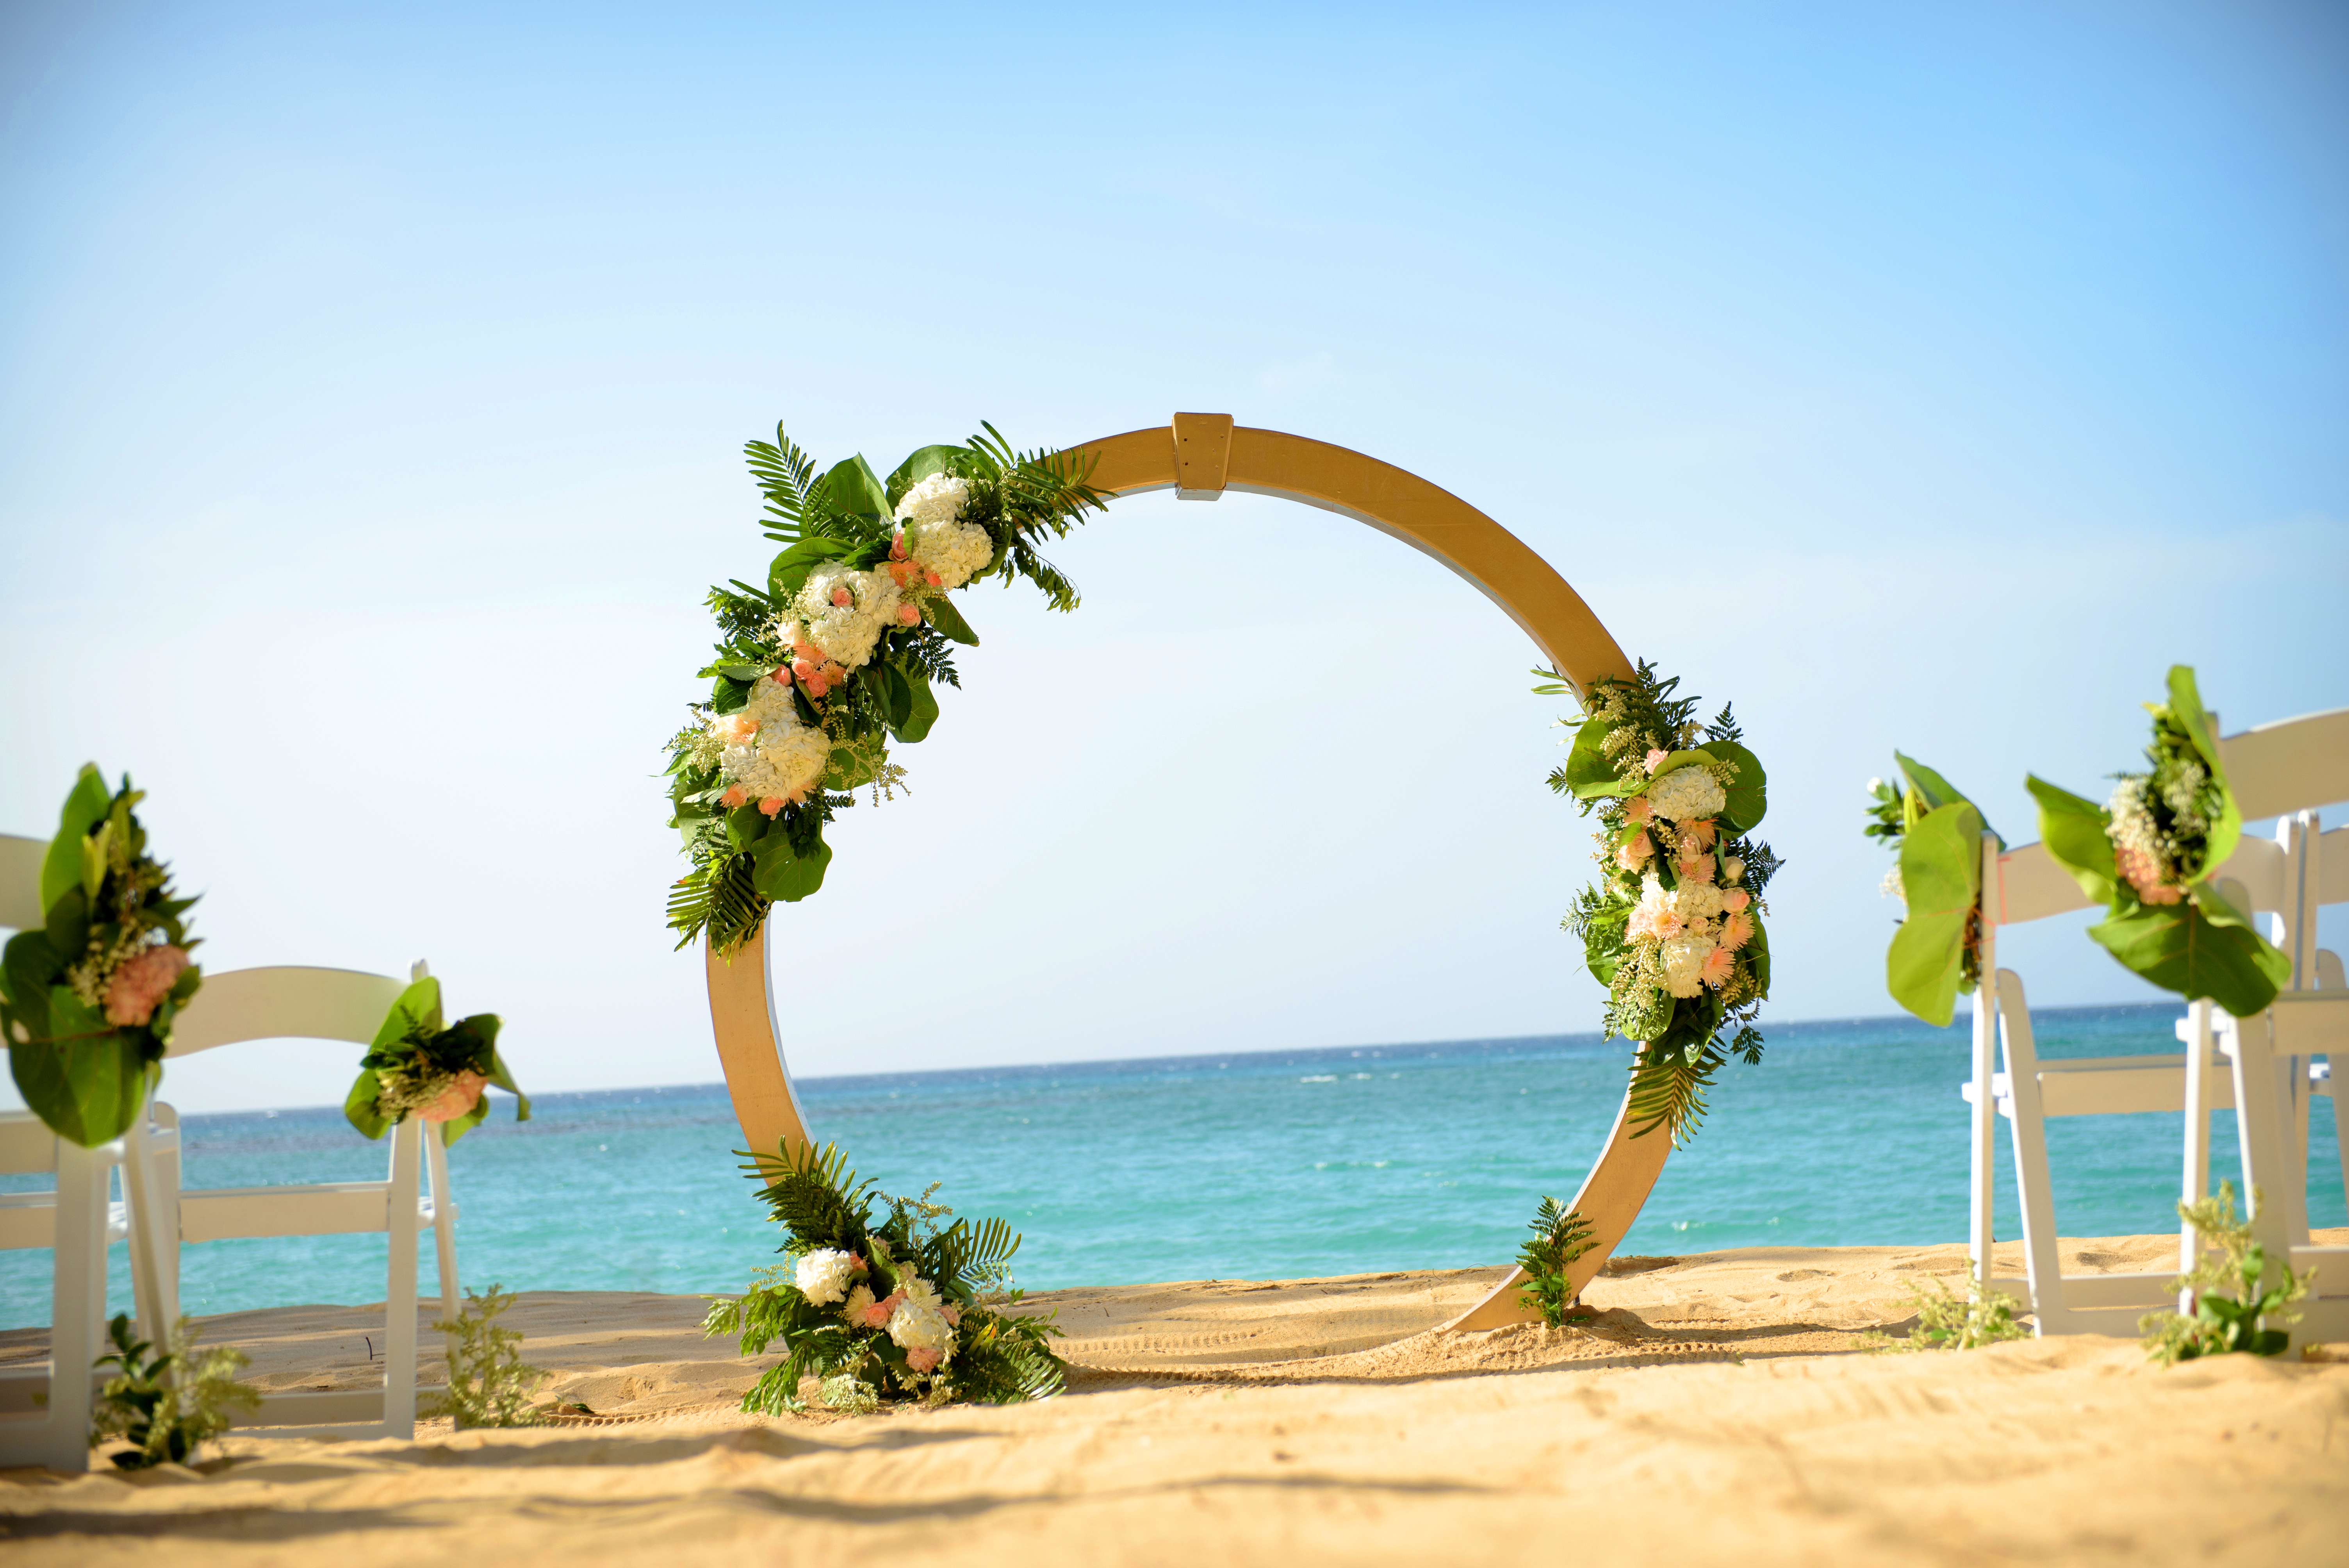 Jamaica Wedding Venues Montego Bay | Jamaica wedding venues, Beach wedding packages, Jamaica wedding